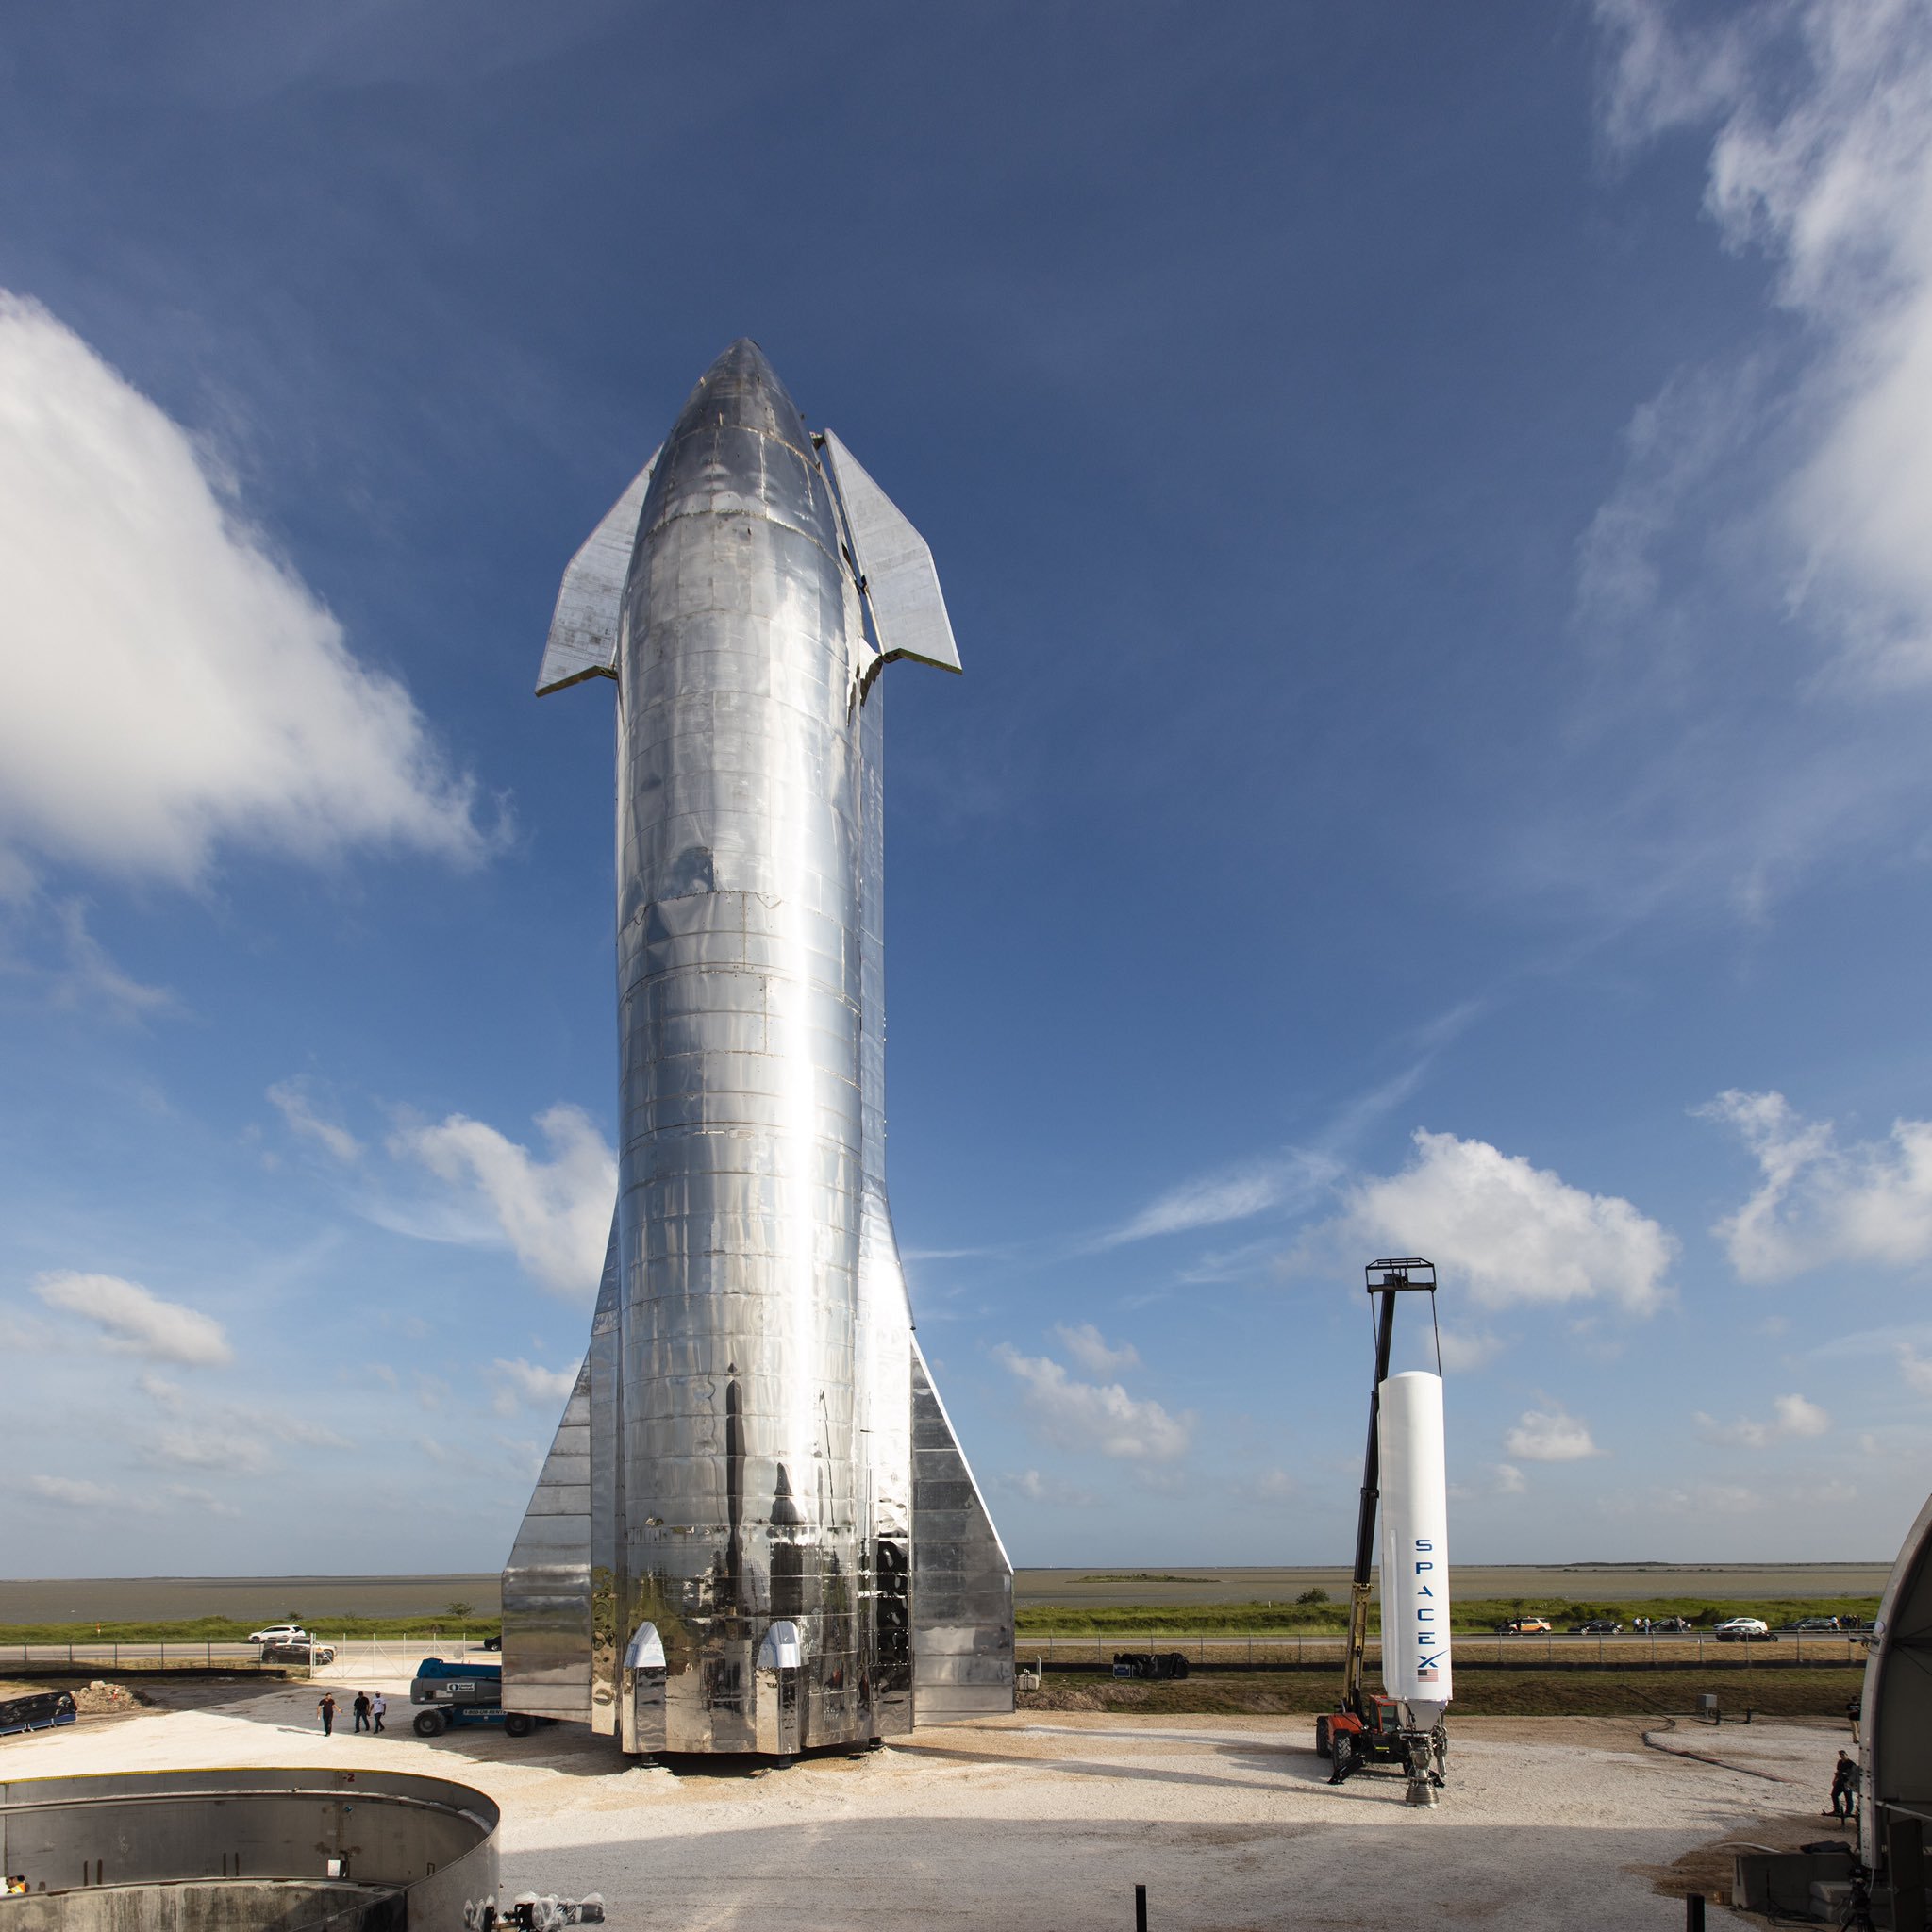 Starship: Илон Маск представил обновленную концепцию межпланетного корабля SpaceX и анонсировал орбитальный полет в течение полугода